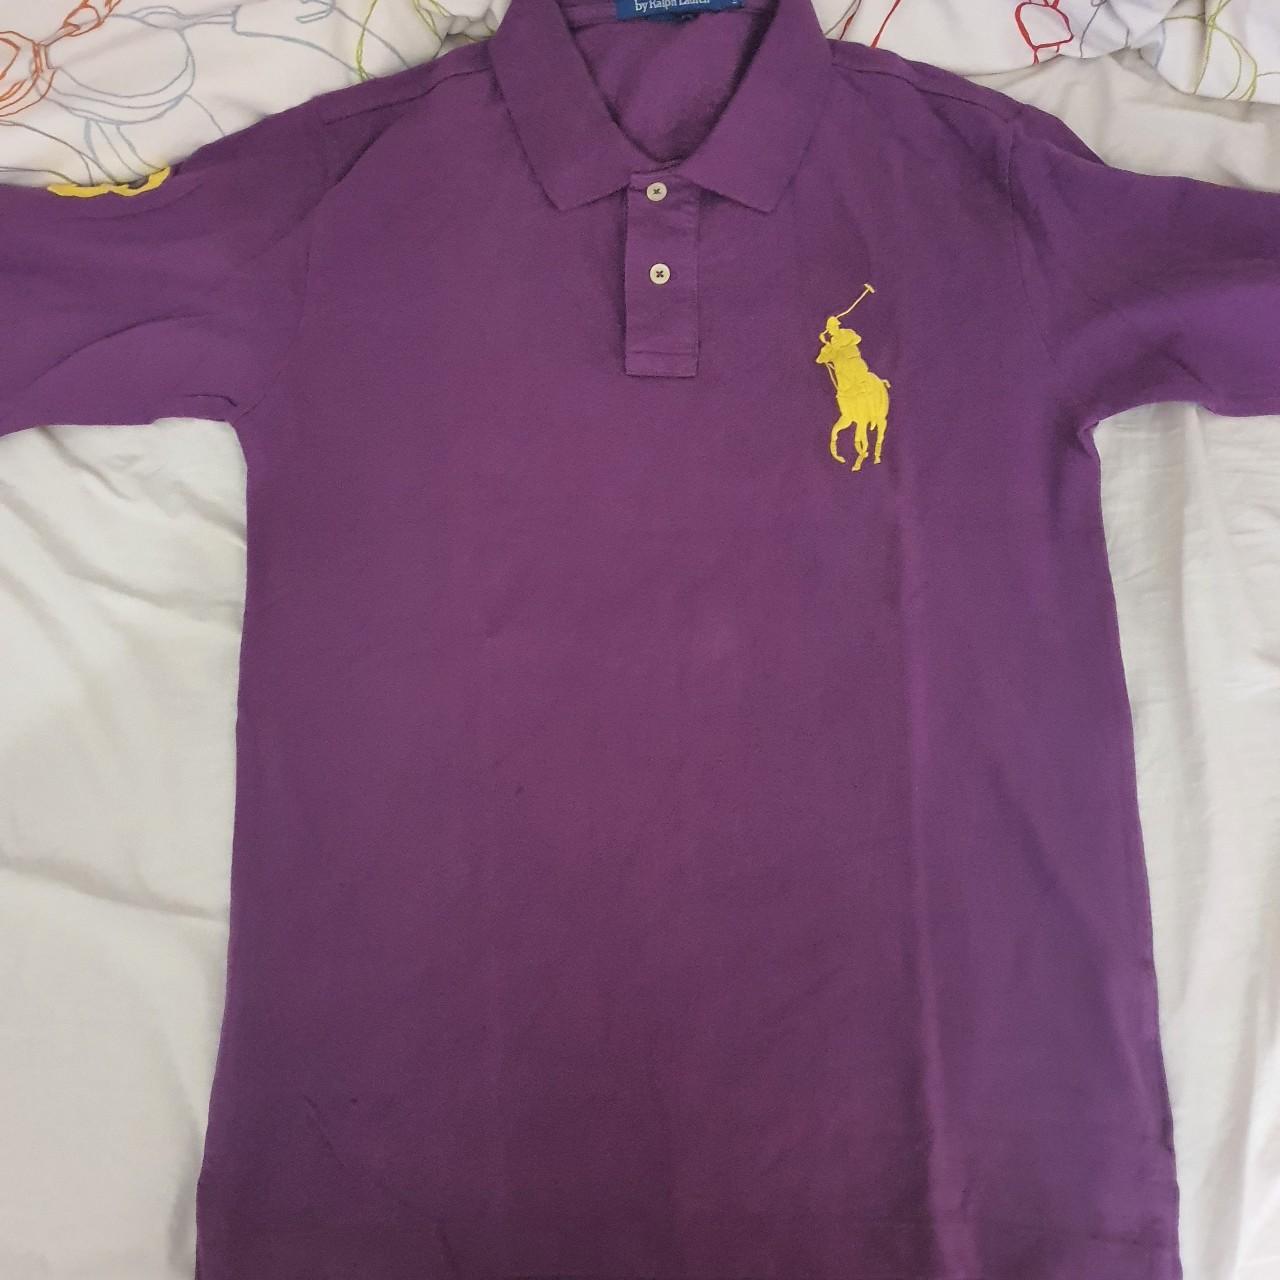 Purple Ralph lauren polo shirt long sleeve mens.... - Depop